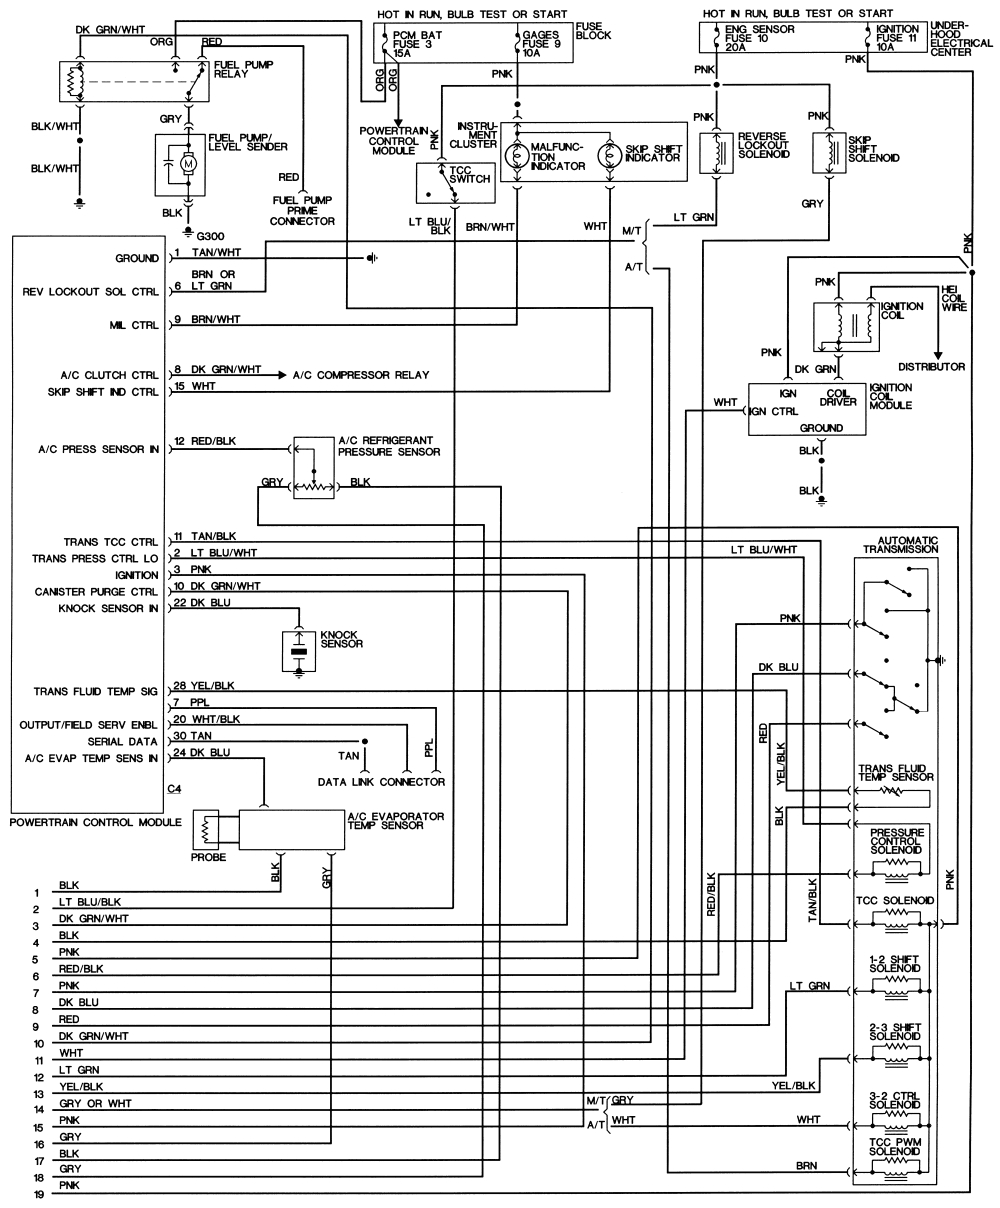 wiring diagram for 98 camaro wiring diagram blog stereo wiring diagram for 98 camaro 1998 camaro